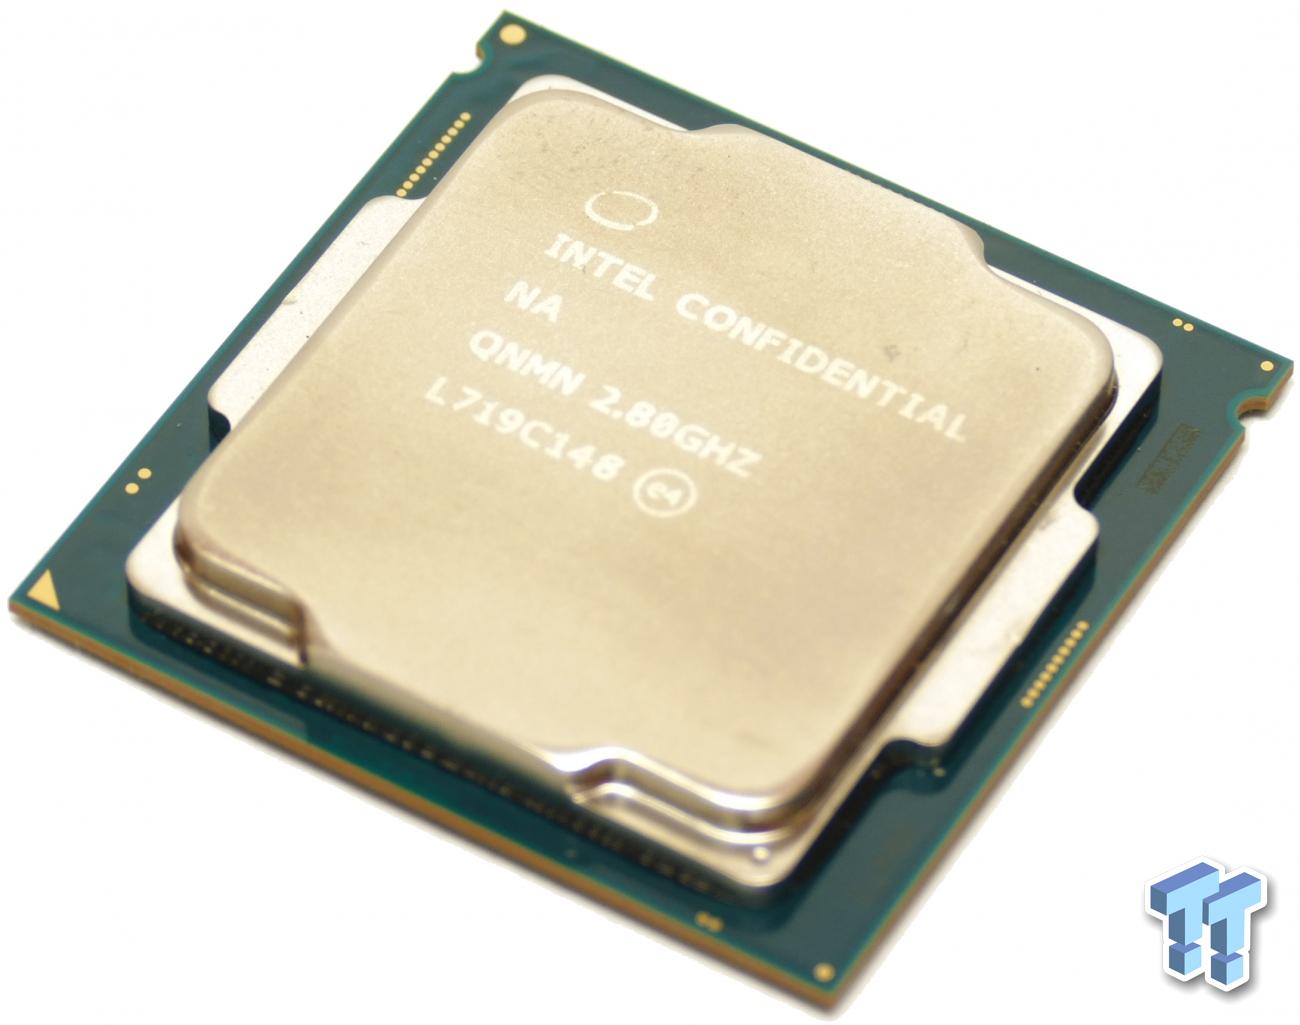 Intel Core i7-8700K and i5-8400 Coffee Lake CPU Review